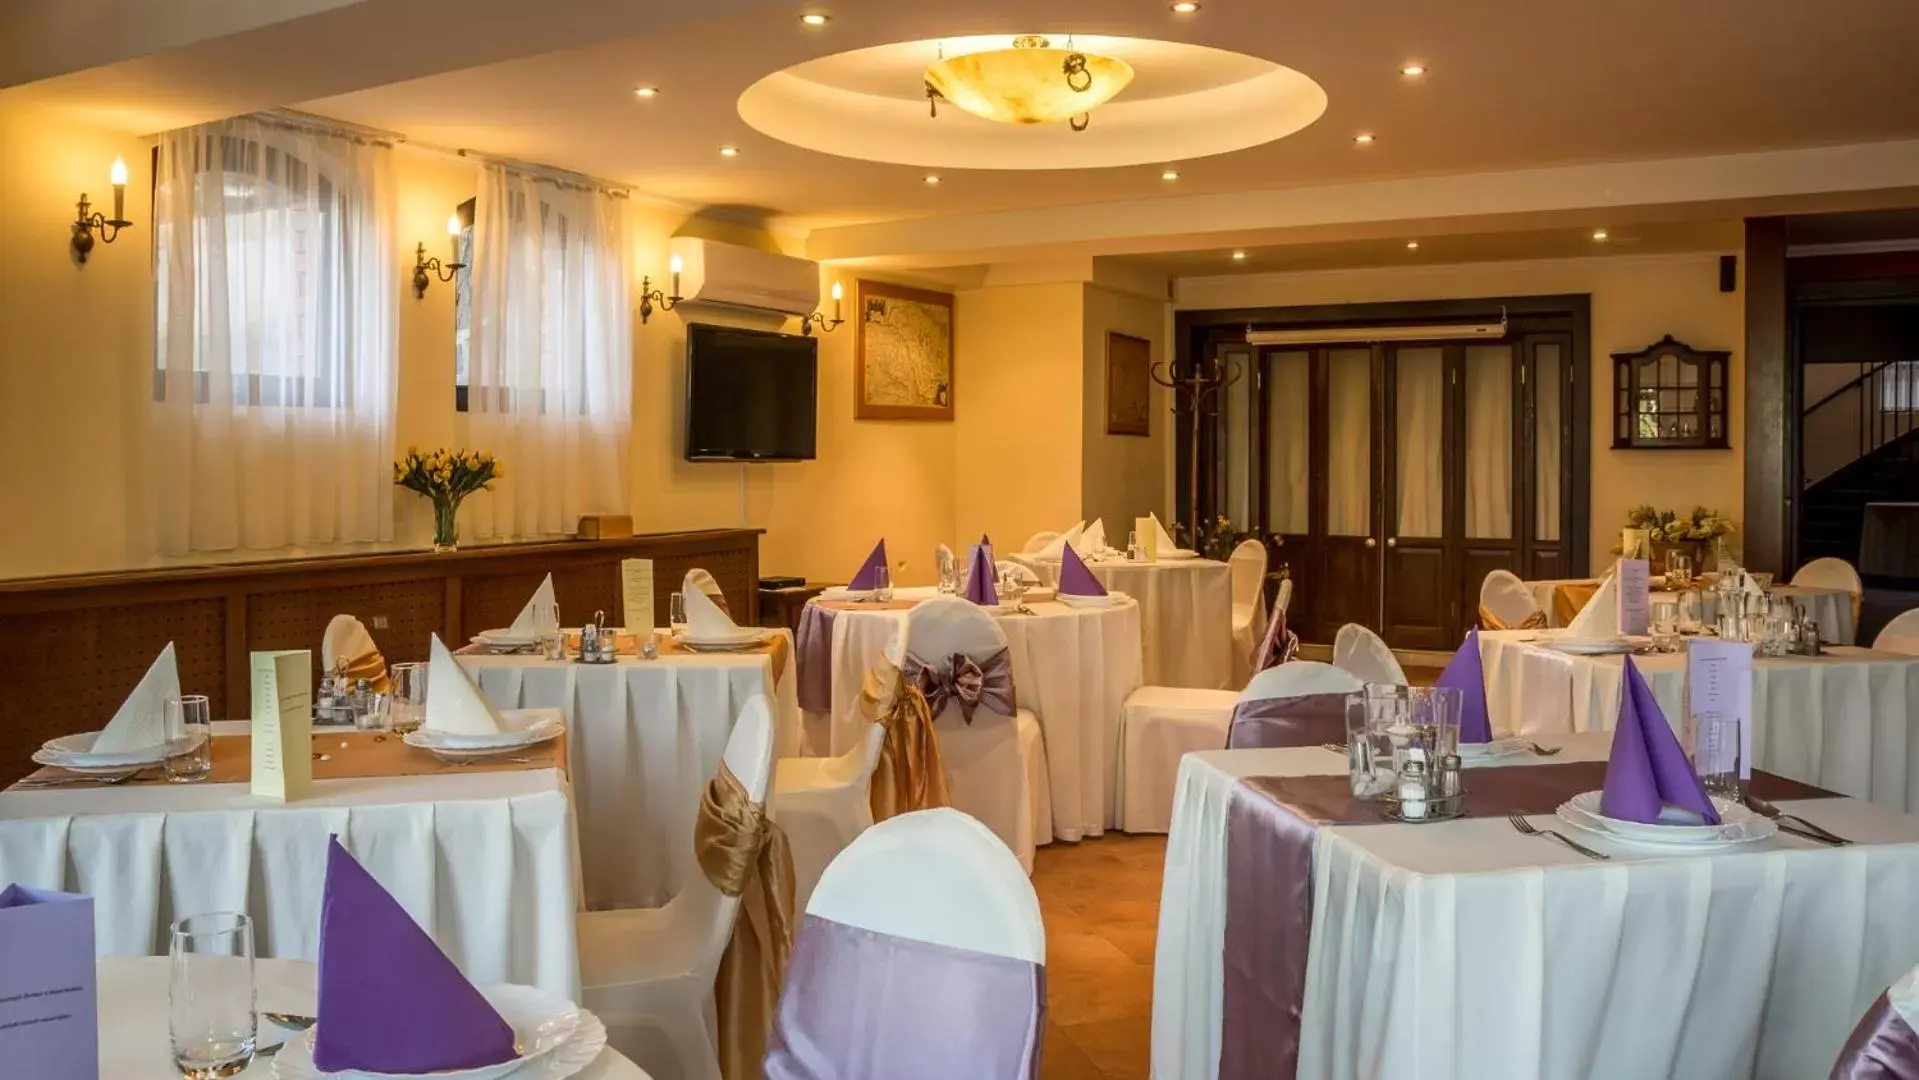 Banquet/Function facilities, Banquet Facilities in Hotel Bobbio